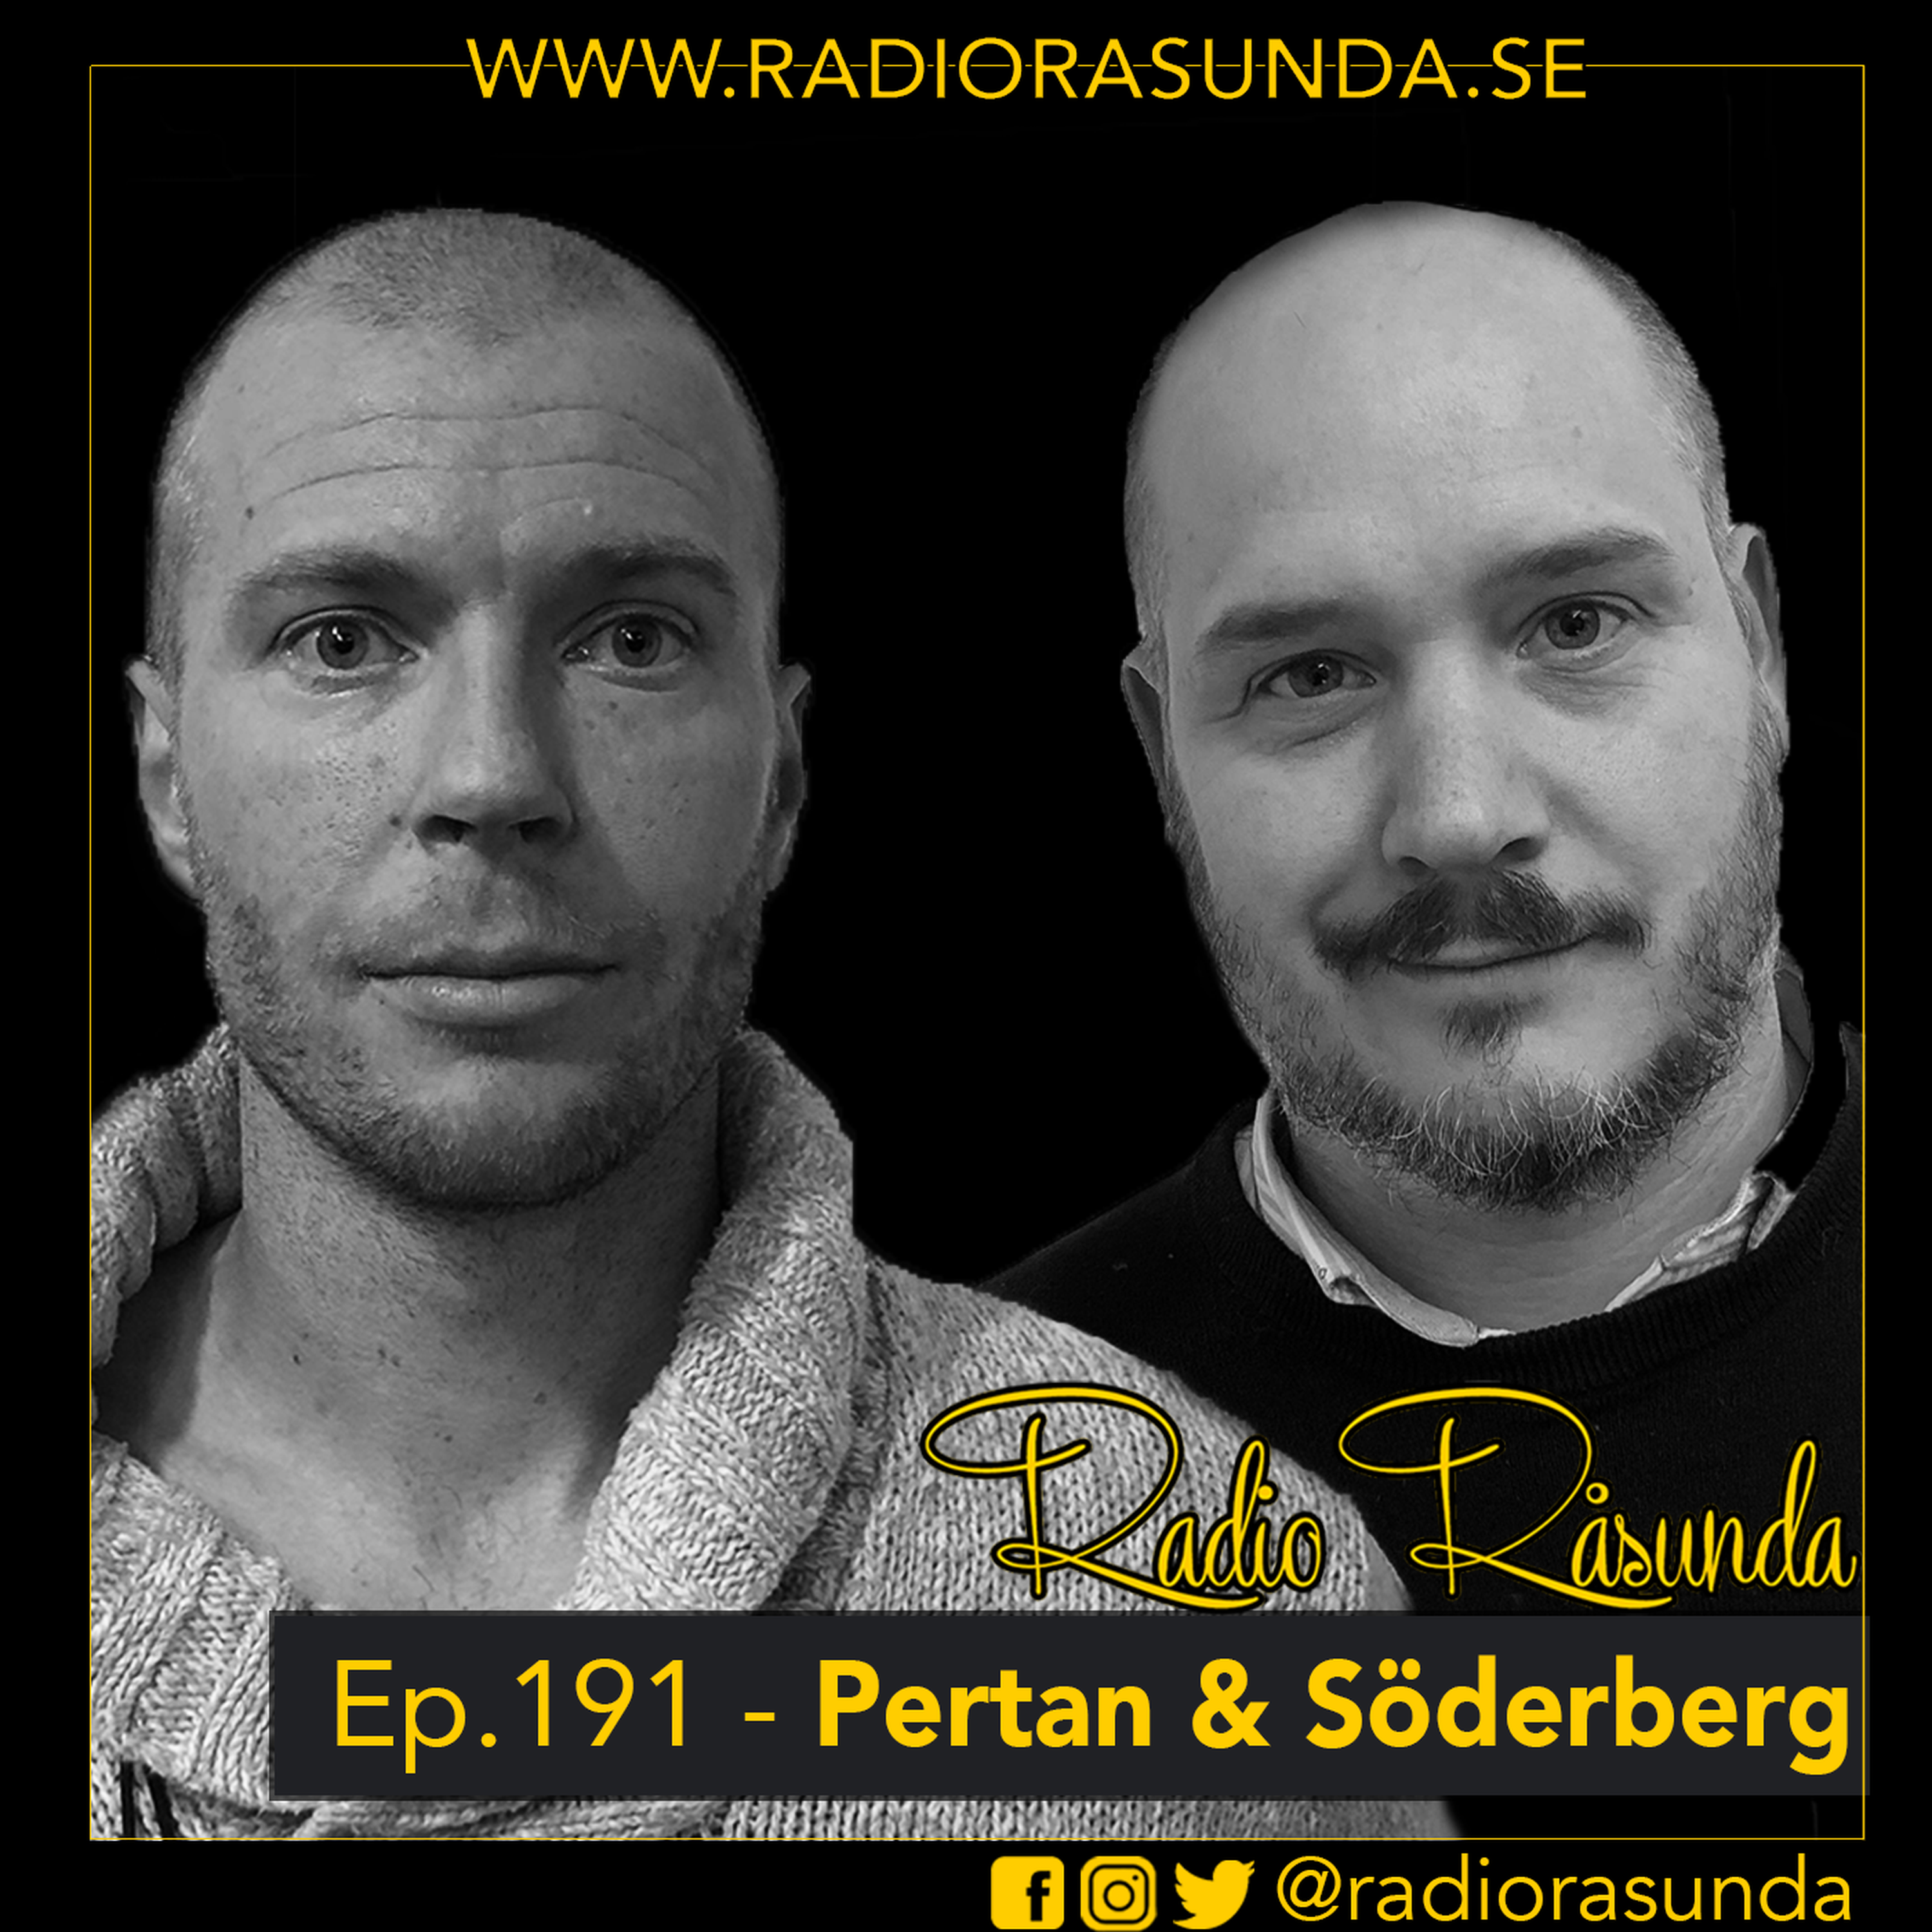 Radio Råsunda #191 - Per Karlsson, Fredrik Söderberg och David Kryssman